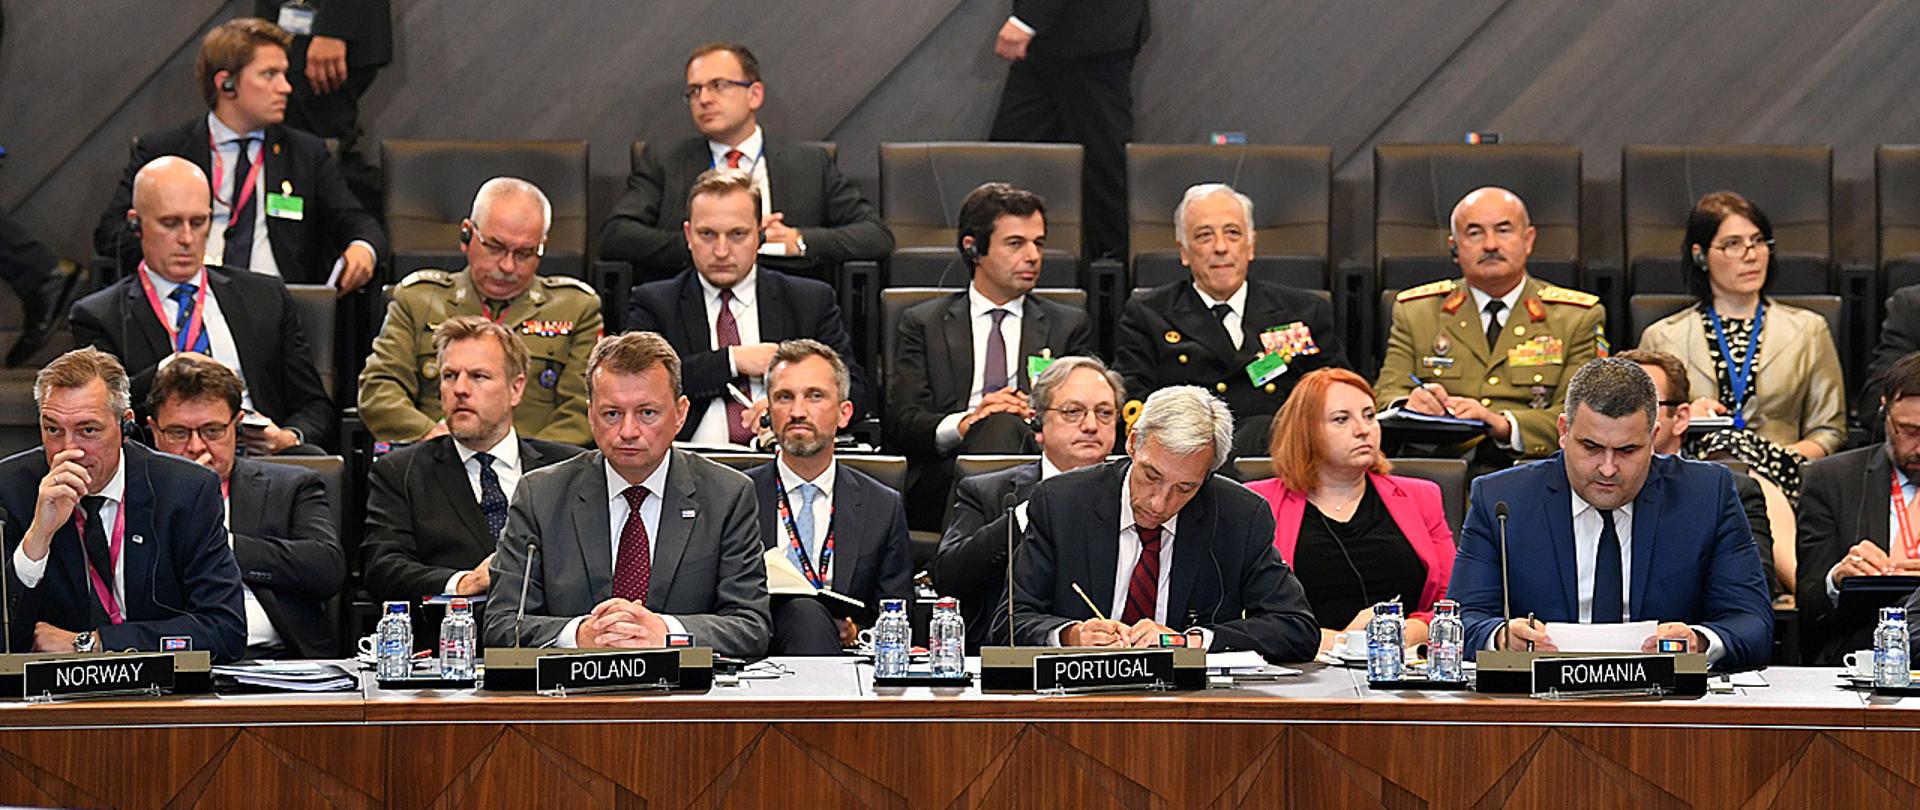 W dniach 26- 27 czerwca br. Mariusz Błaszczak, minister obrony narodowej, bierze udział w sesji Rady Północnoatlantyckiej podczas spotkania ministrów obrony państw NATO w Kwaterze Głównej Sojuszu w Brukseli.